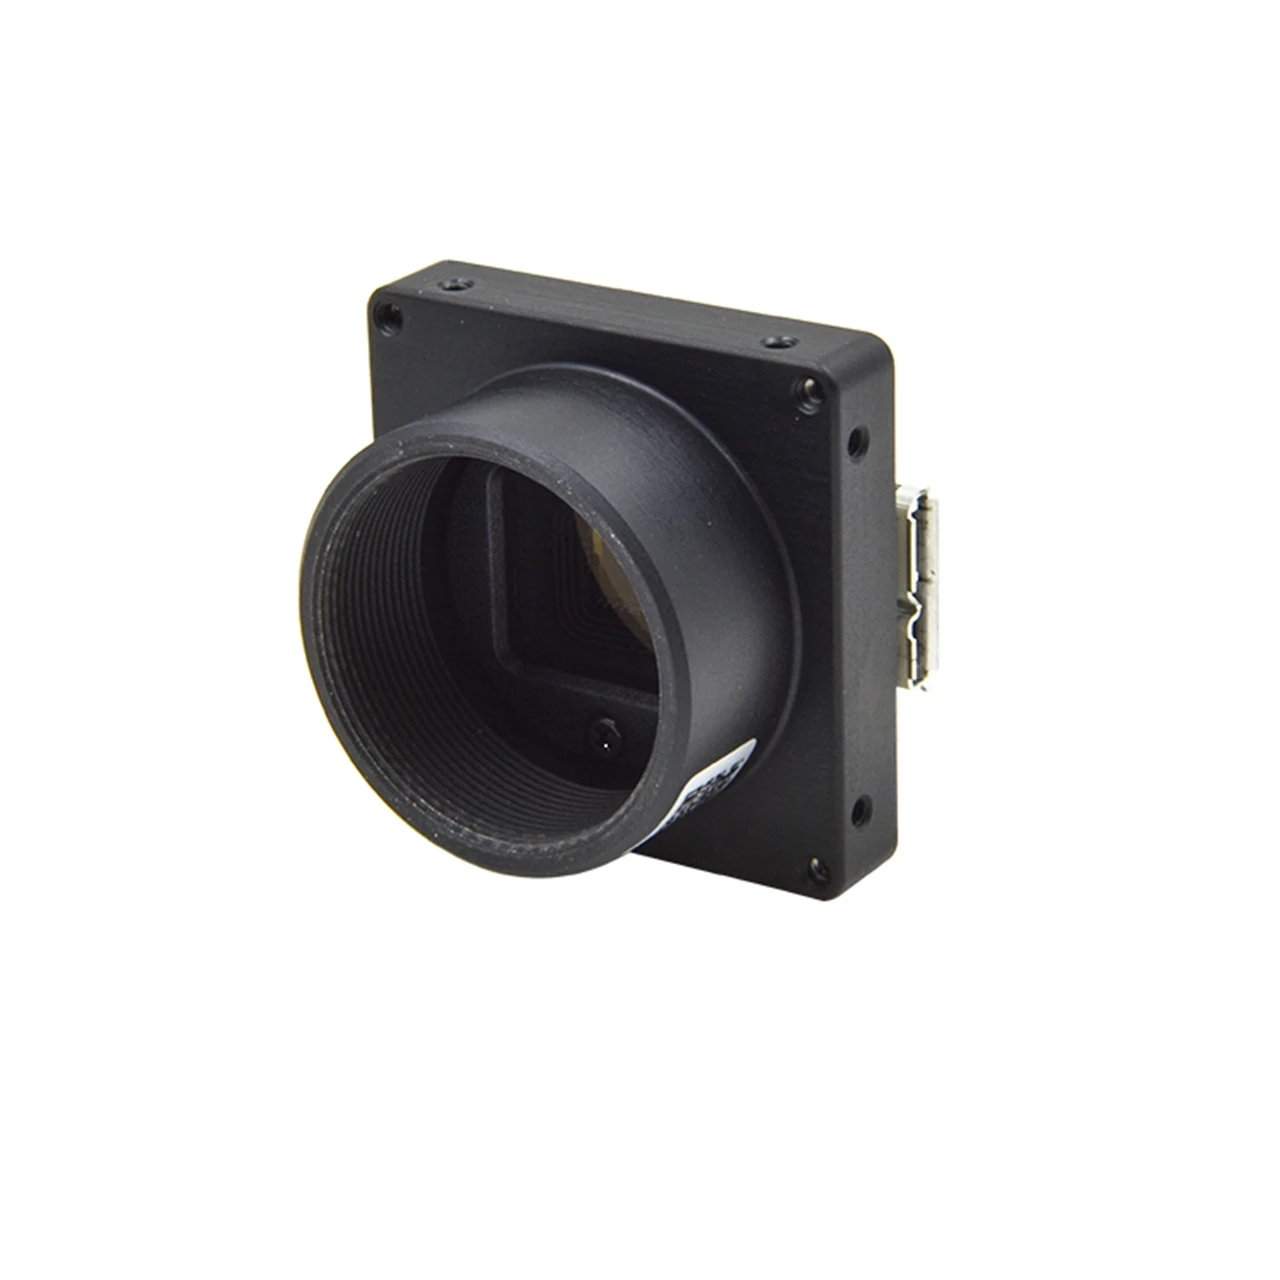 

Visiondata LEO 4020S IMX226 камера с высоким разрешением 12MP USB3.0 скручивающаяся CMOS-камера для промышленного осмотра